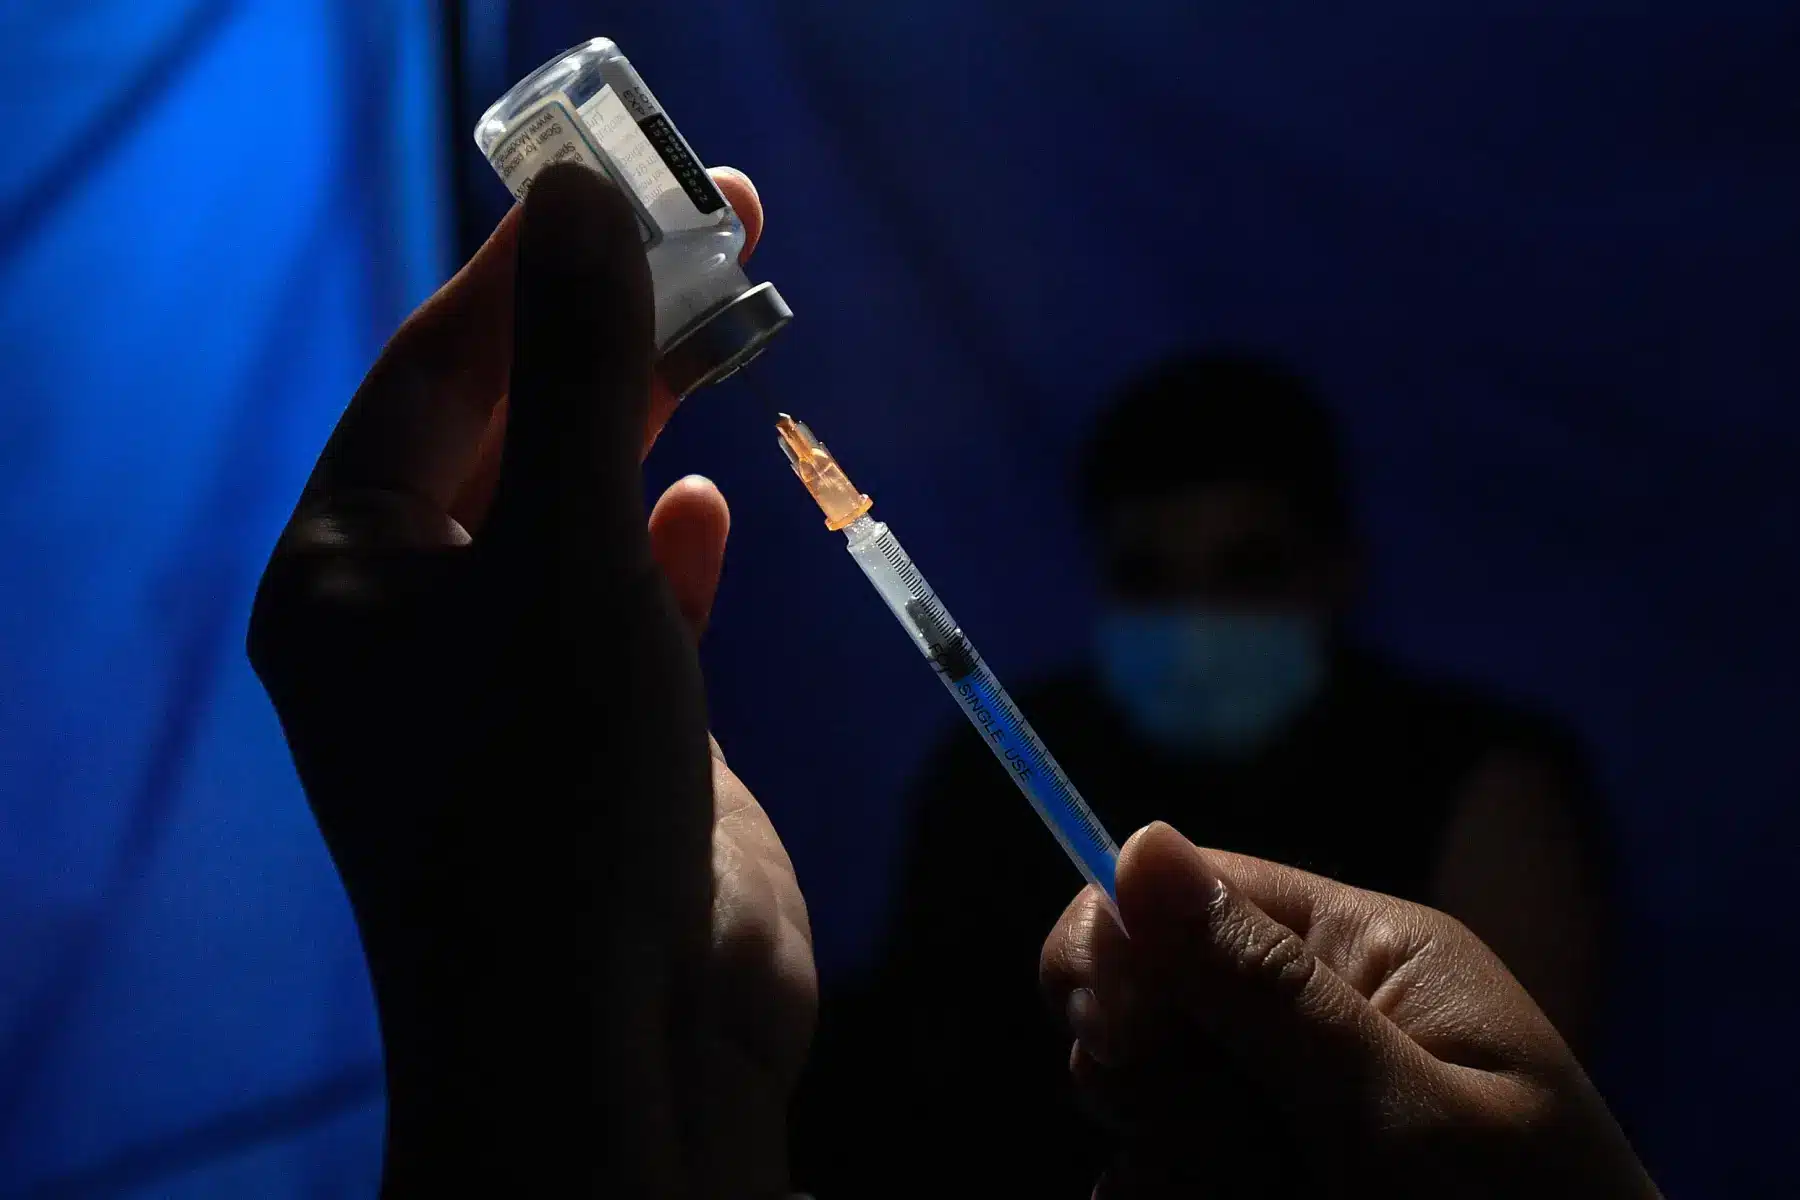 VIÑA DEL MAR, 25 abril, 2022 (Xinhua) -- Una trabajadora de la salud prepara una dosis de una vacuna contra la enfermedad del nuevo coronavirus (COVID-19) en un punto de vacunación, en Viña del Mar, Chile, el 25 de abril de 2022. (Xinhua/Jorge Villegas)